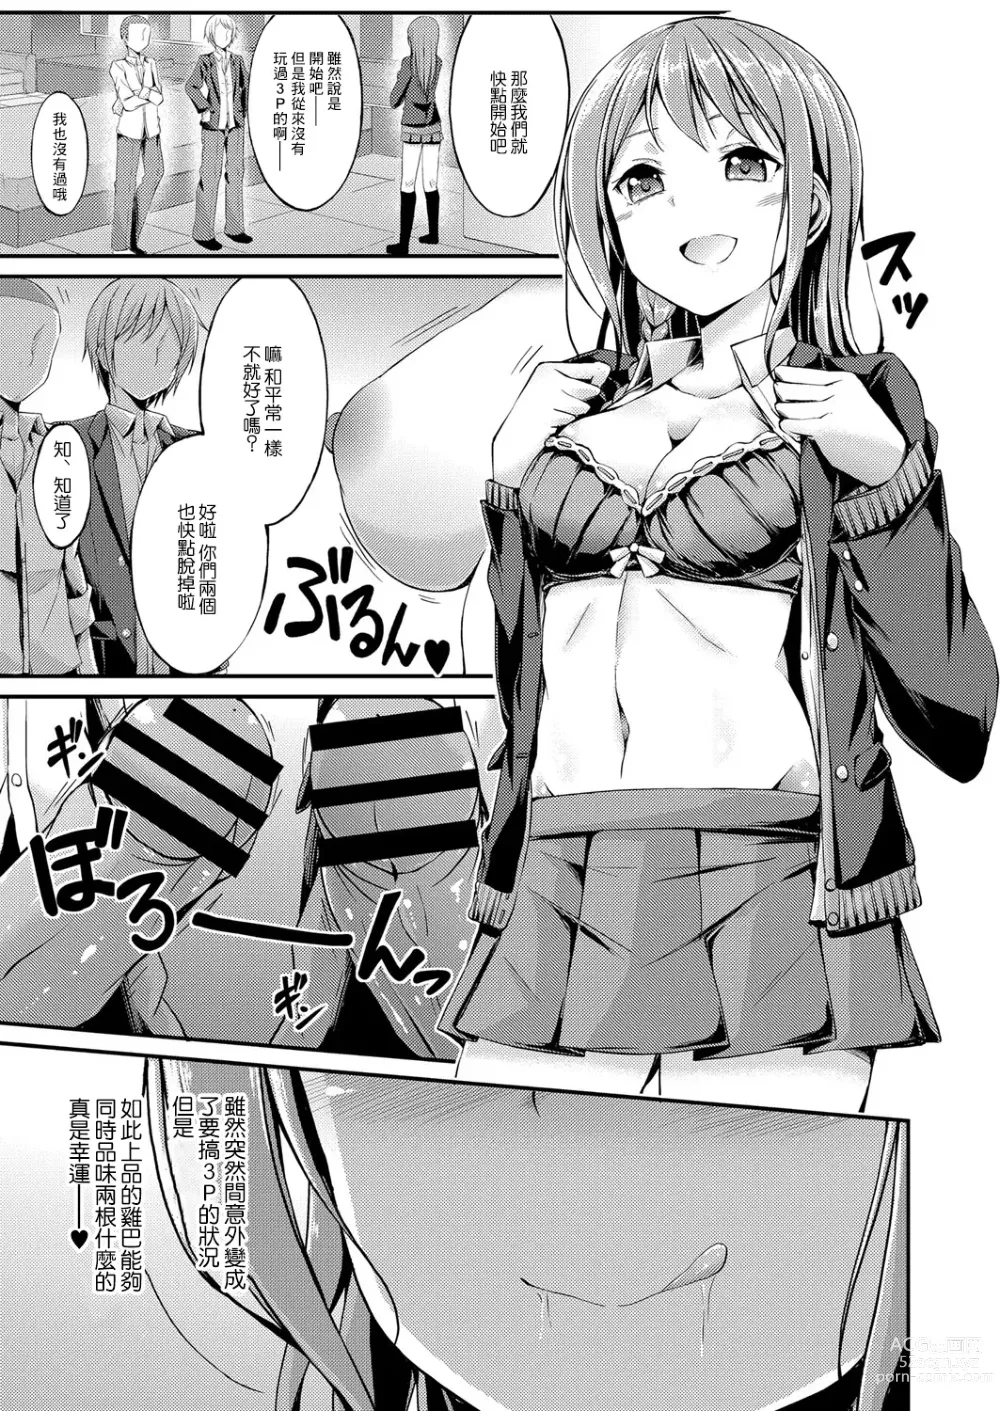 Page 7 of manga Himitsu no Asobi